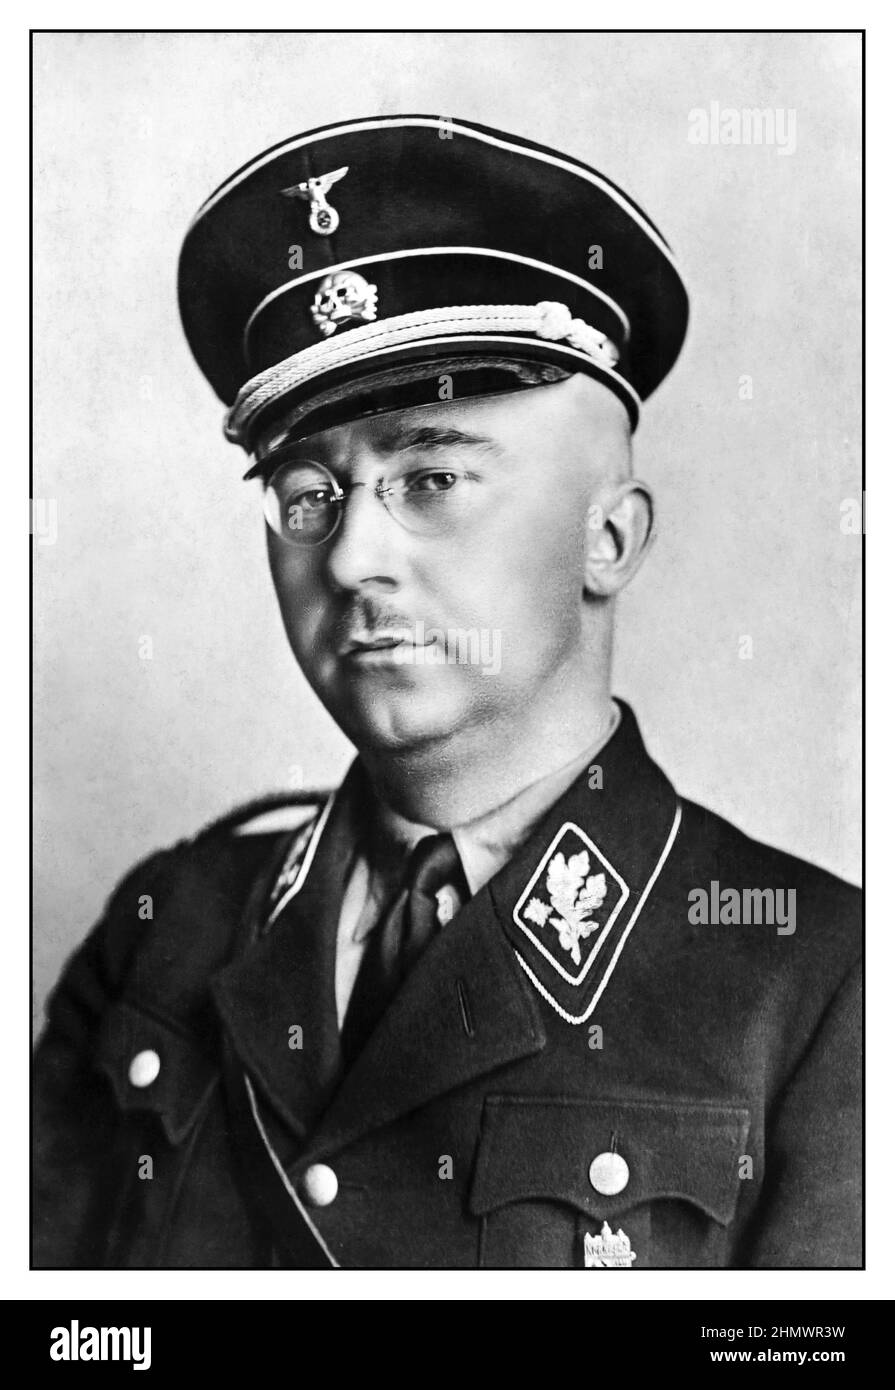 WW 1940 2 Heinrich Himmler formale Portrait in der Waffen SS-Uniform deutschen nationalsozialistischen Politiker Nazi militärischer Befehlshaber Geheimpolizei. Himmler war einer der mächtigsten Männer im nationalsozialistischen Deutschland und einer der Menschen, die direkt für den Holocaust verantwortlich. Erleichtert Völkermord in Europa und den Osten. Selbstmord, 1945 nach gefangen Flucht unter einer anderen Identität. Stockfoto